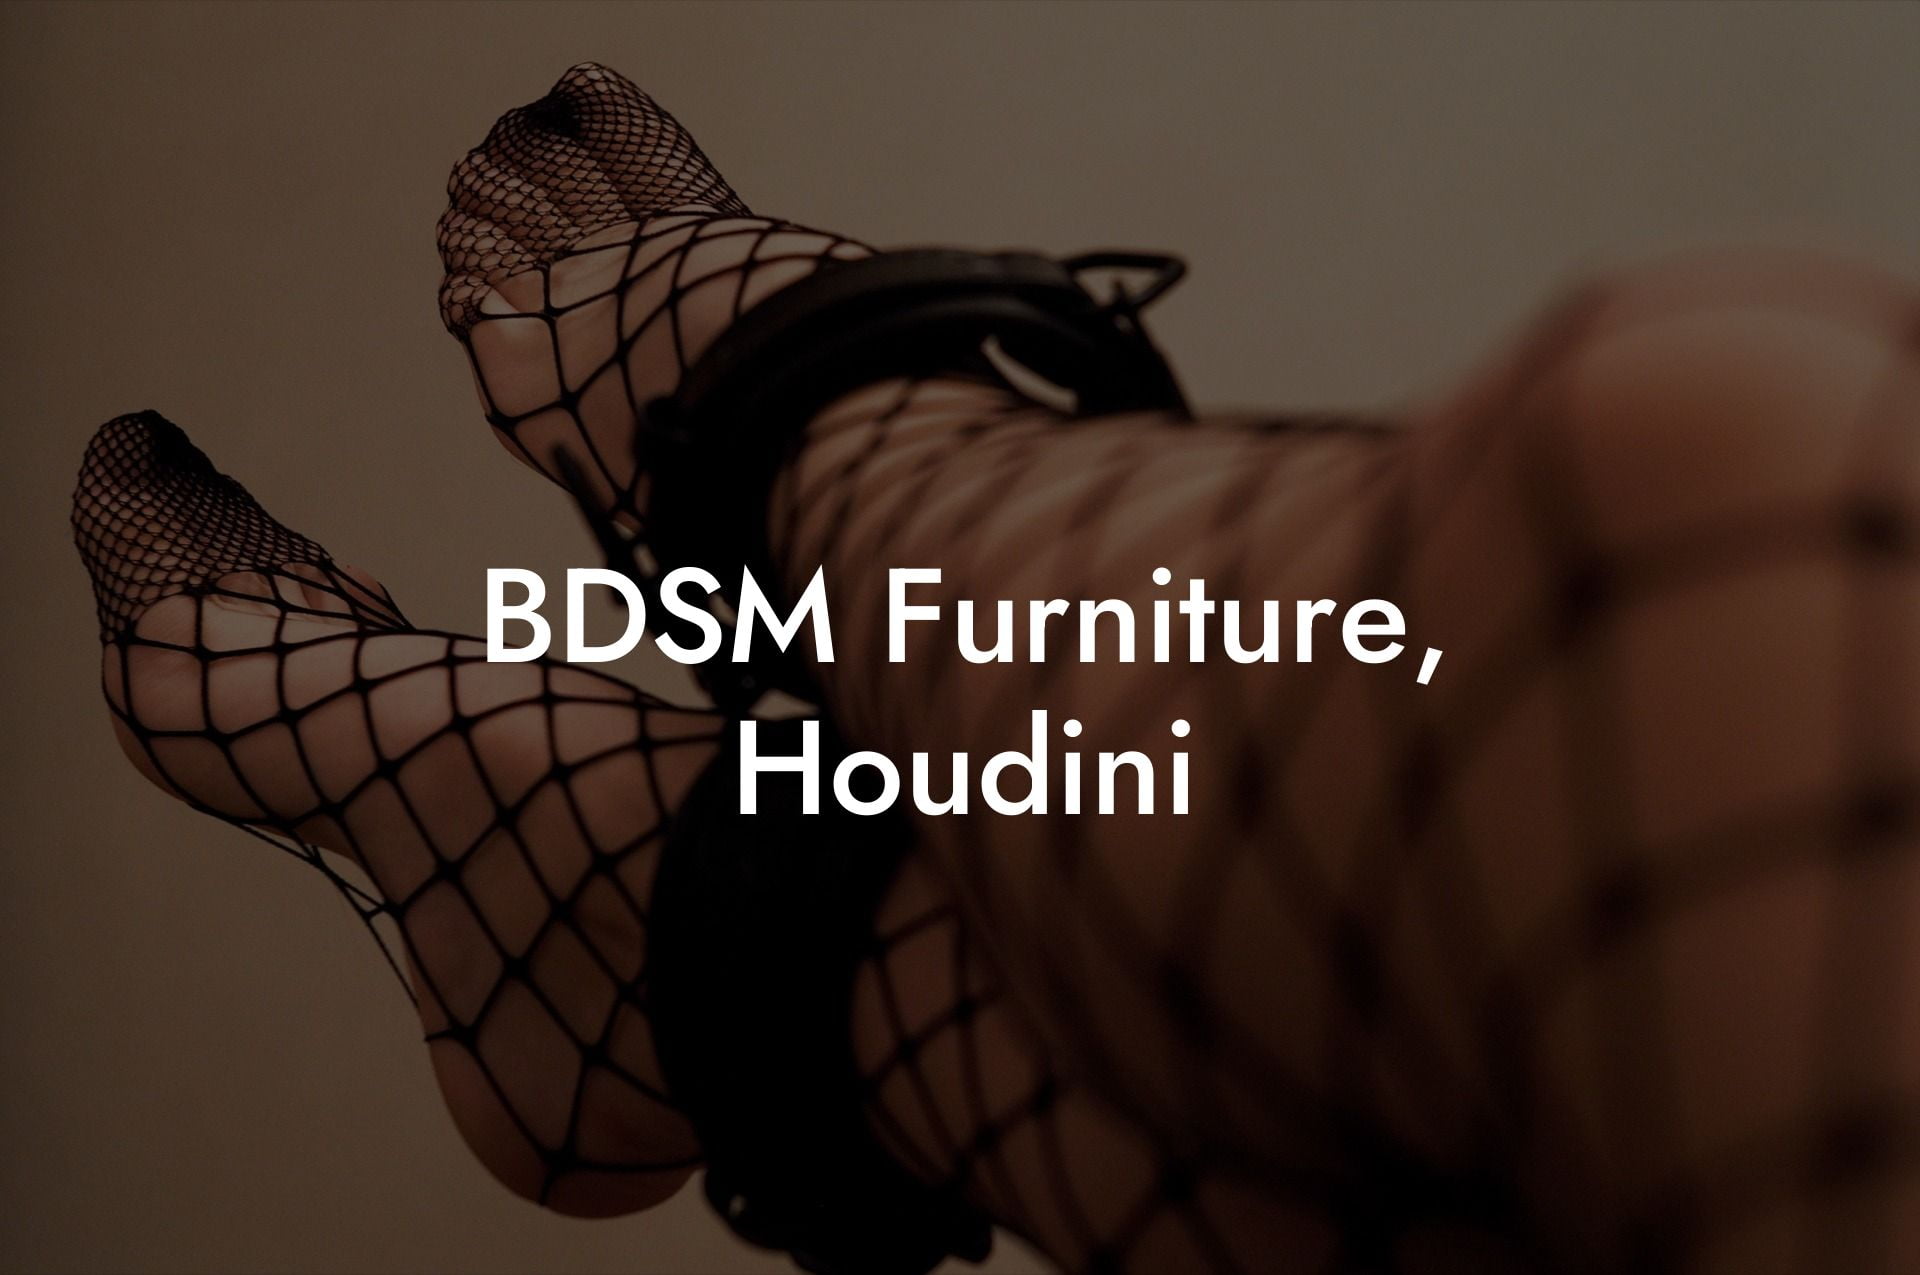 BDSM Furniture, Houdini